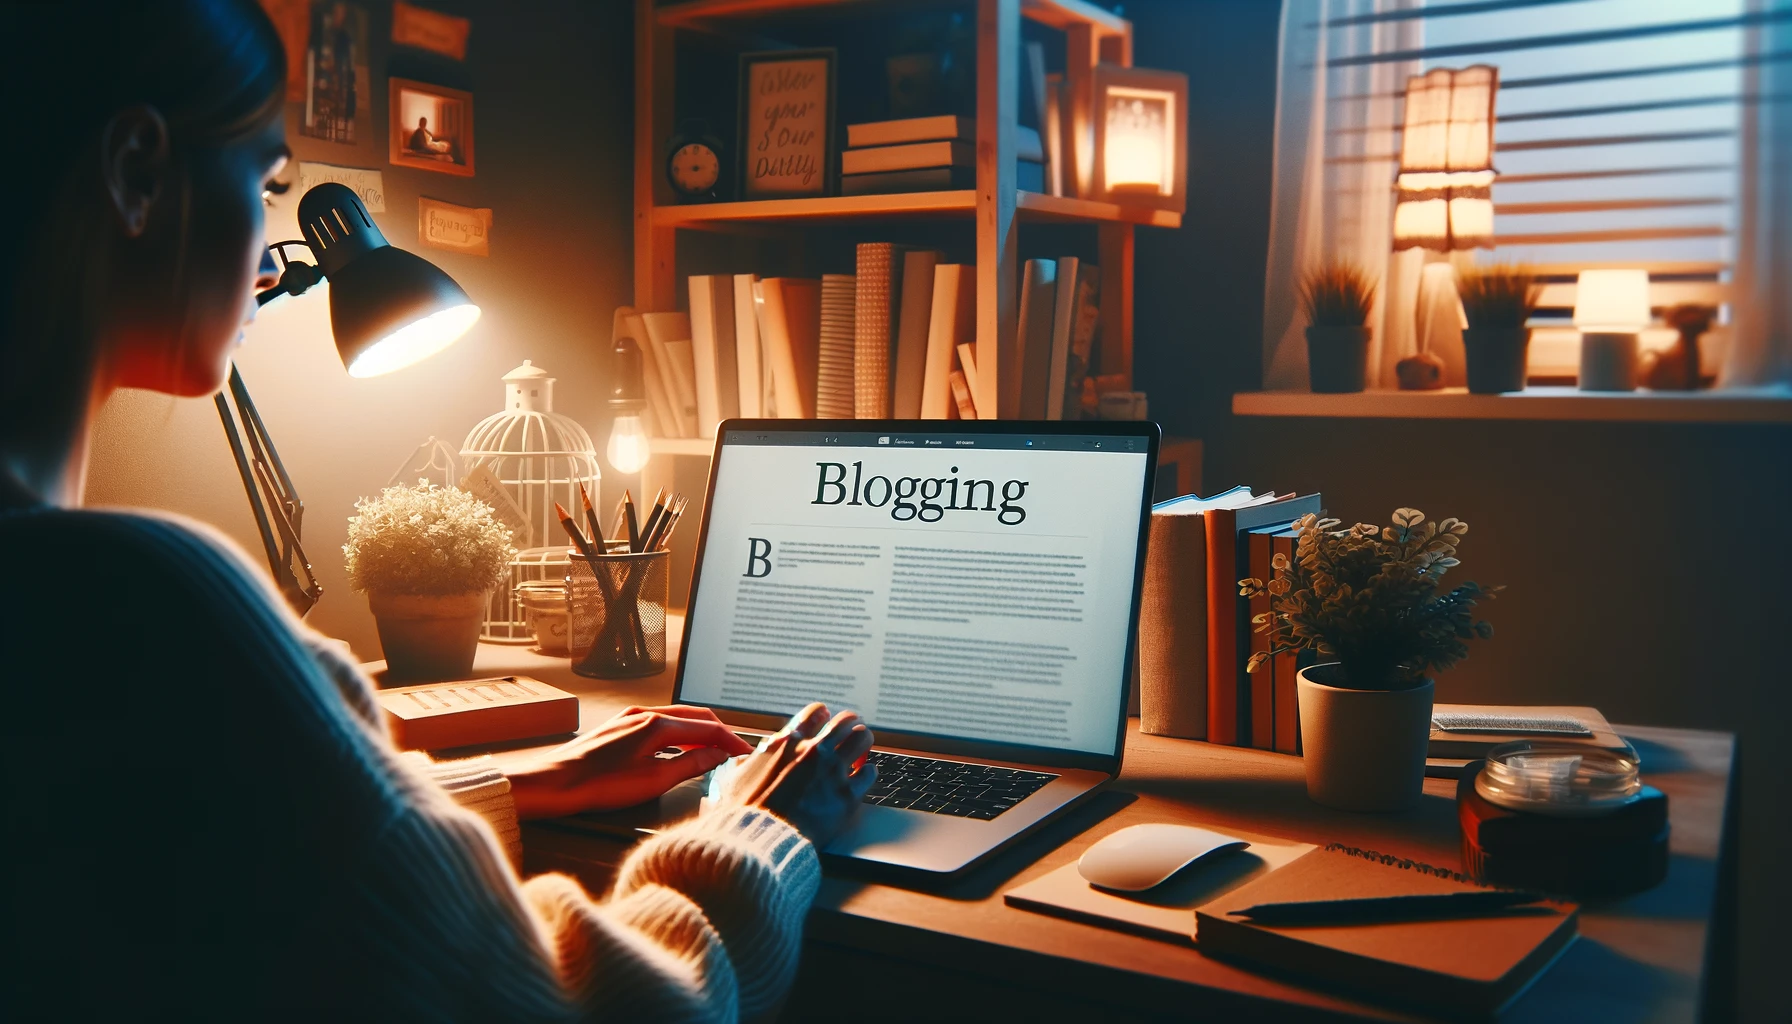 Eine gemütliche Abendszene, die einen Blogger zeigt, der an einem häuslichen Arbeitsplatz an einem Laptop tippt, beleuchtet von weichem Licht, was die persönliche Note und Authentizität widerspiegelt, die das Bloggen in die digitale Welt bringt.